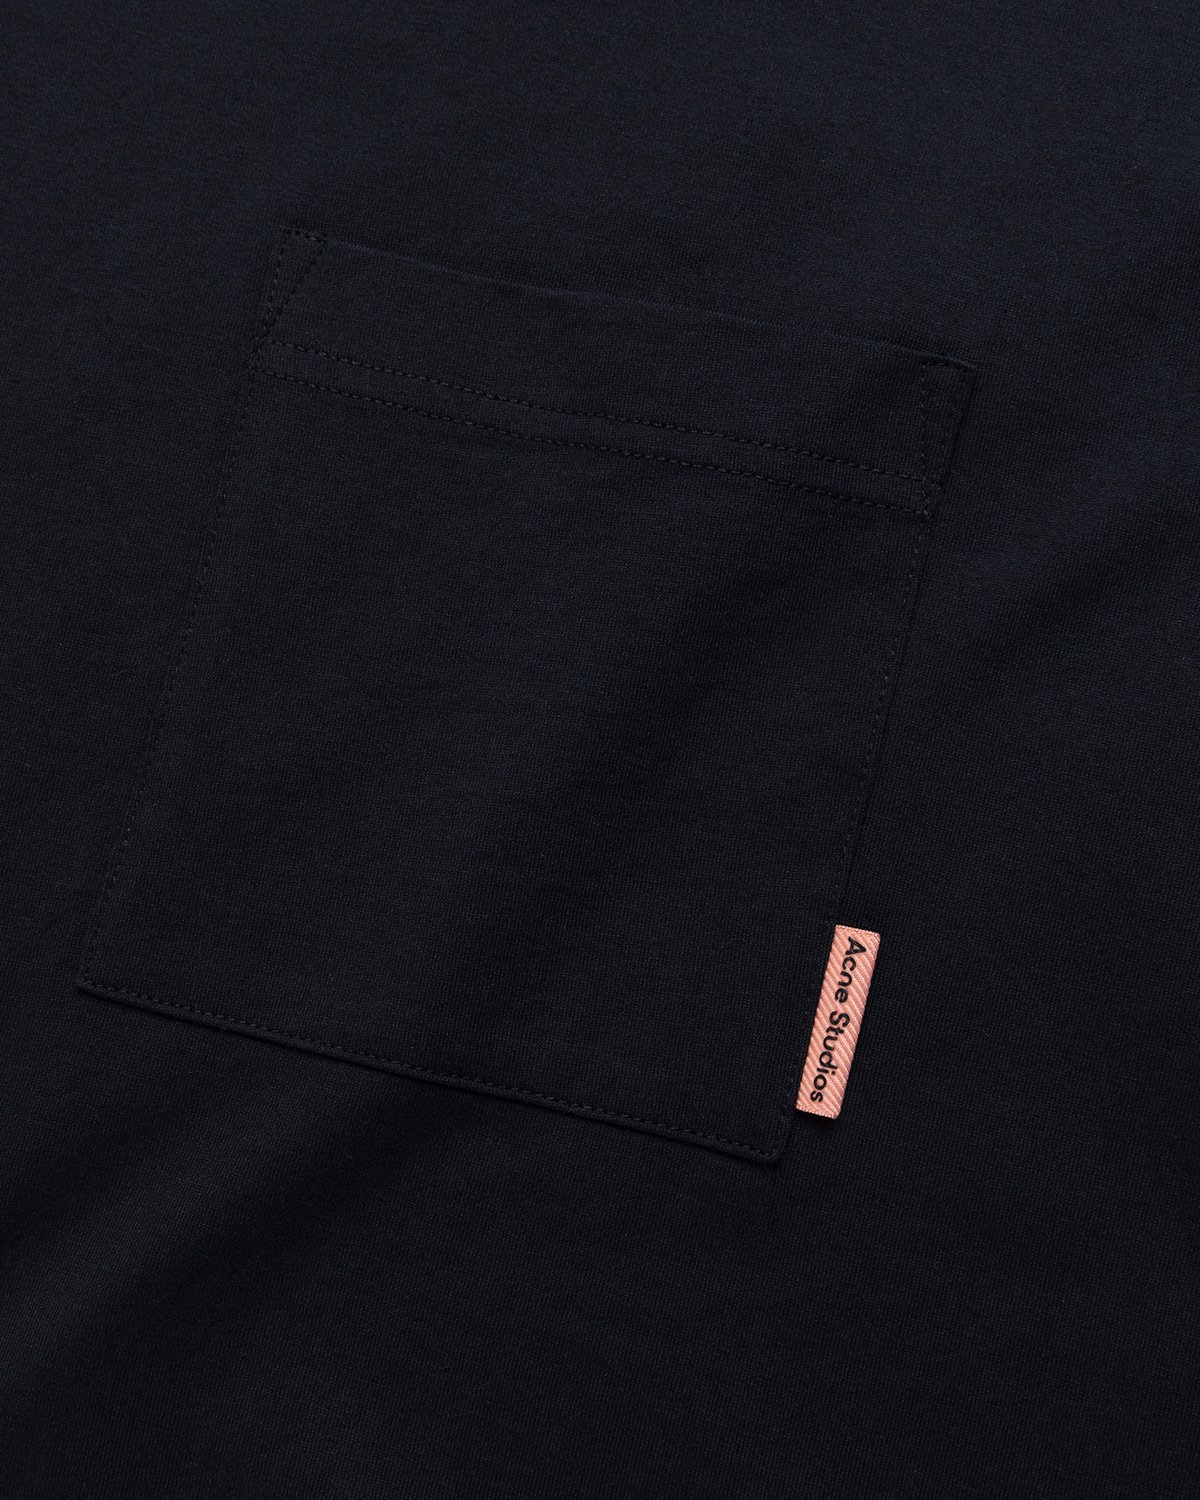 Acne Studios - Short Sleeve Pocket T-Shirt Black - Clothing - Black - Image 3